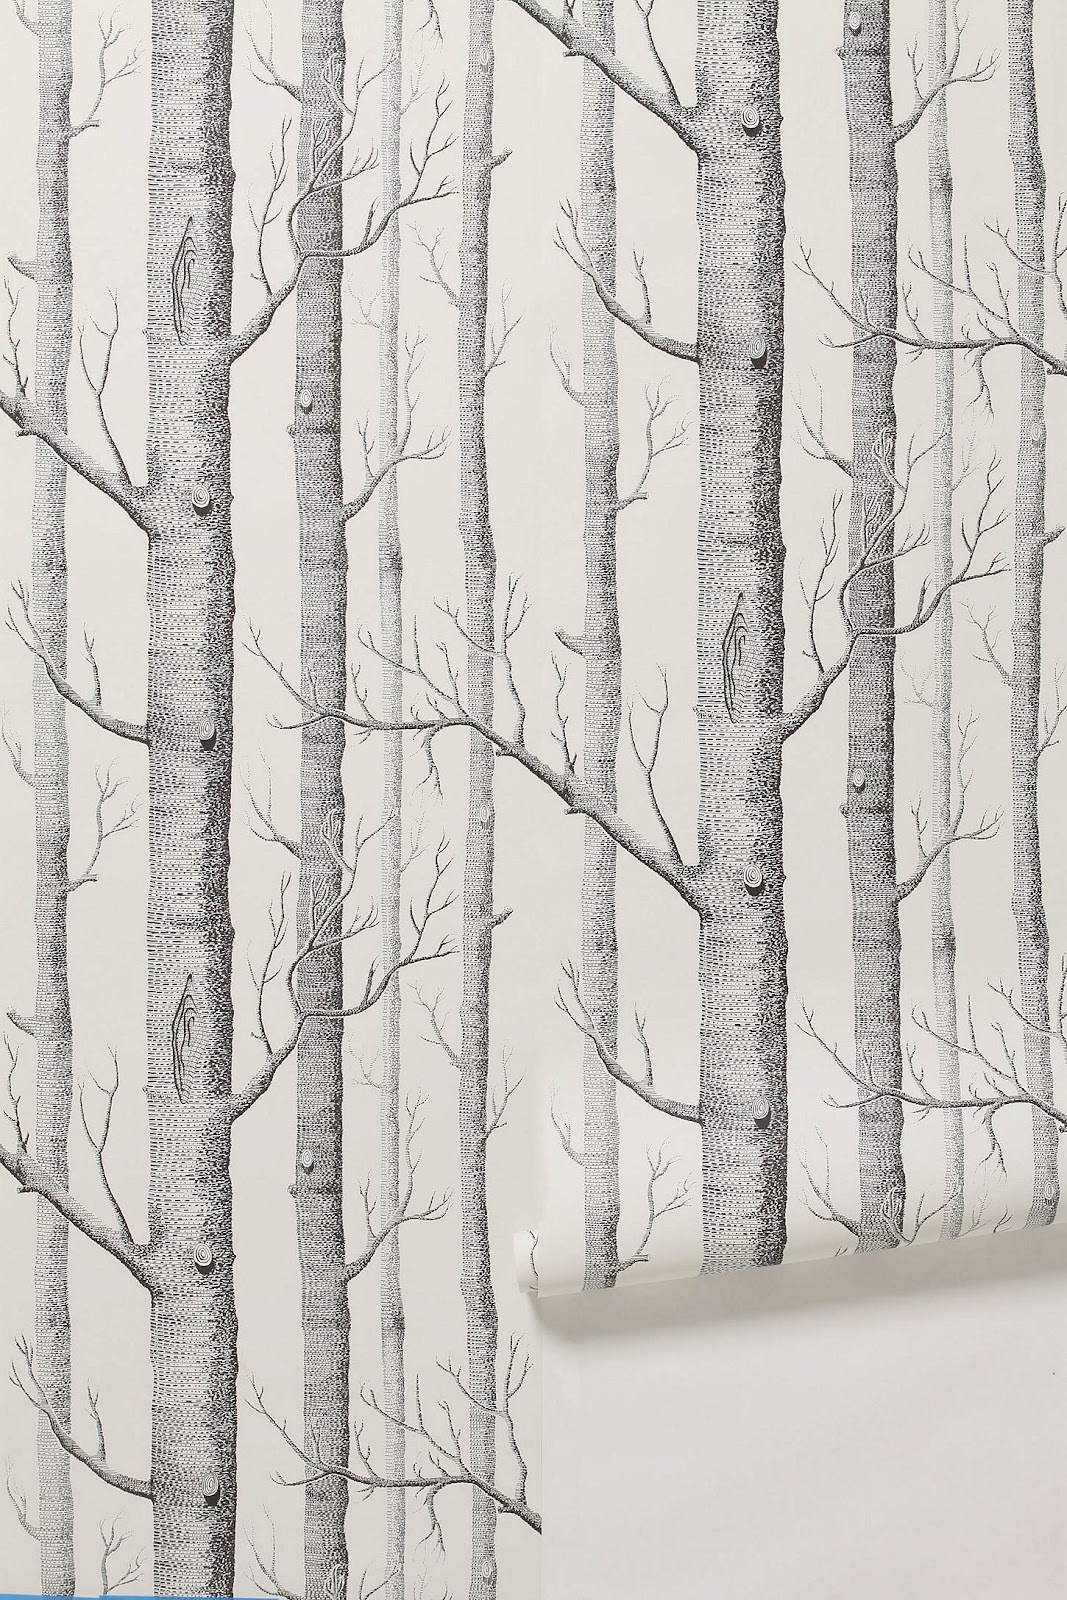 birch tree wallpaper,tree,forest,canoe birch,birch,woody plant